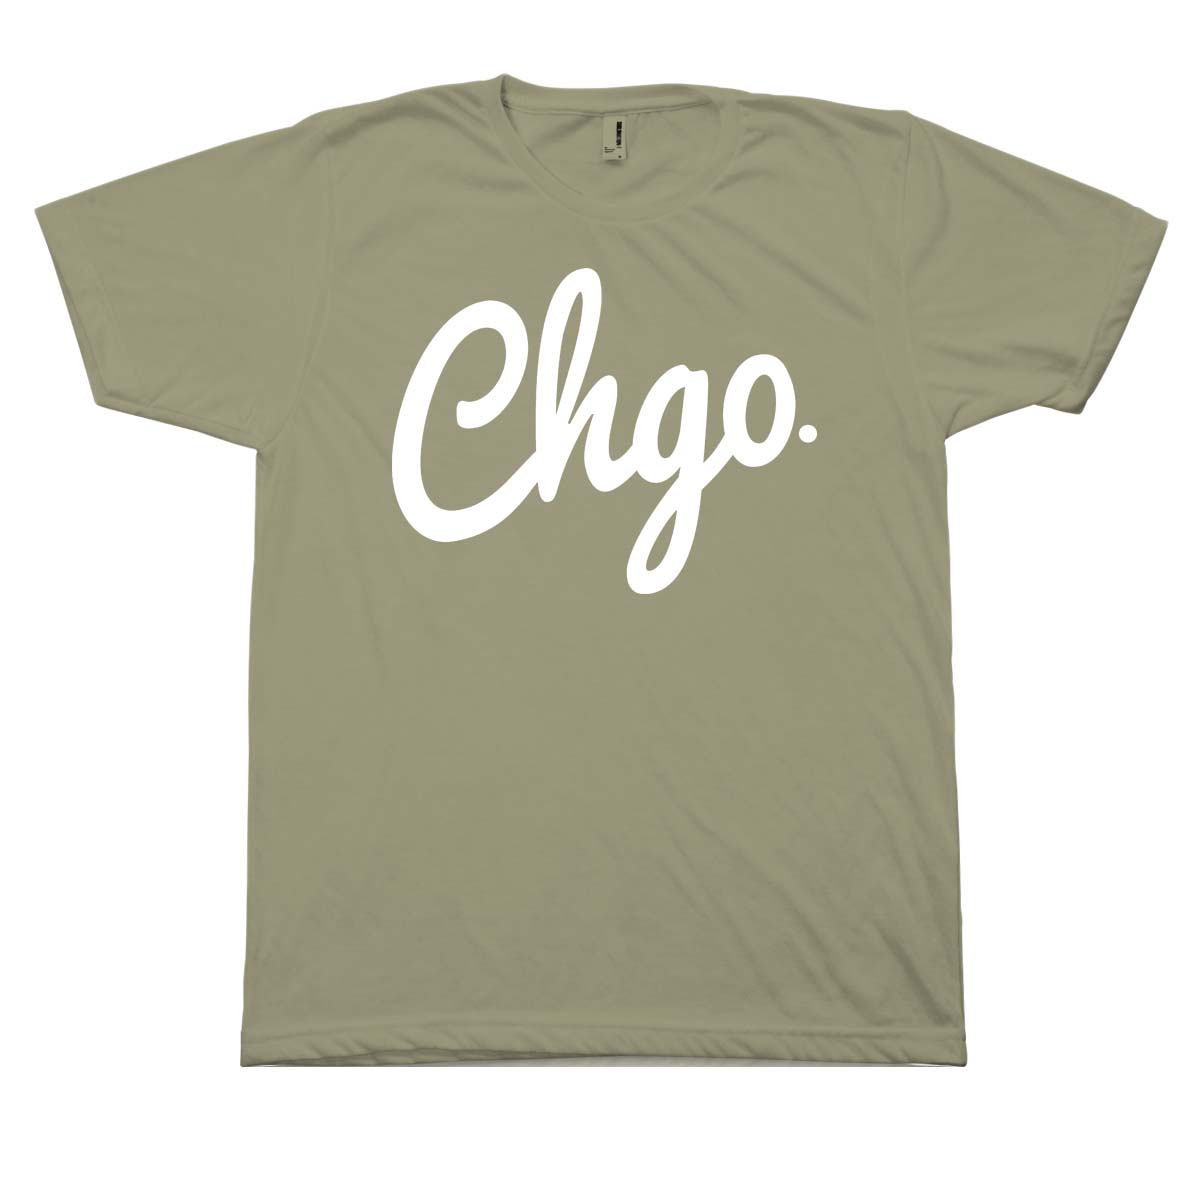 CHGO Olive and White T-Shirt